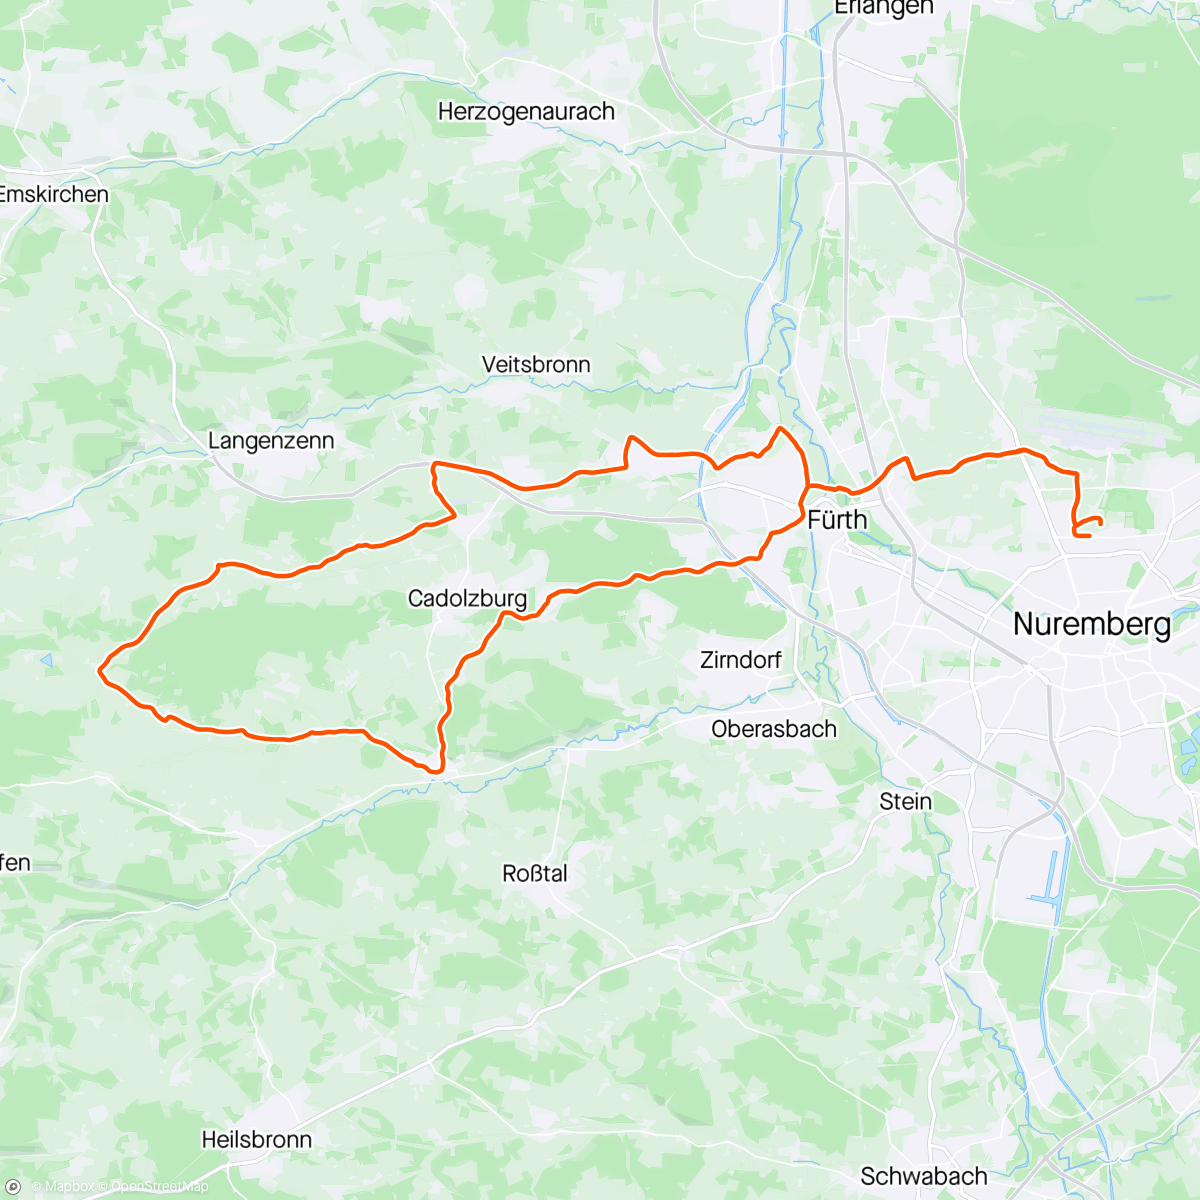 「Feierabendrunde」活動的地圖